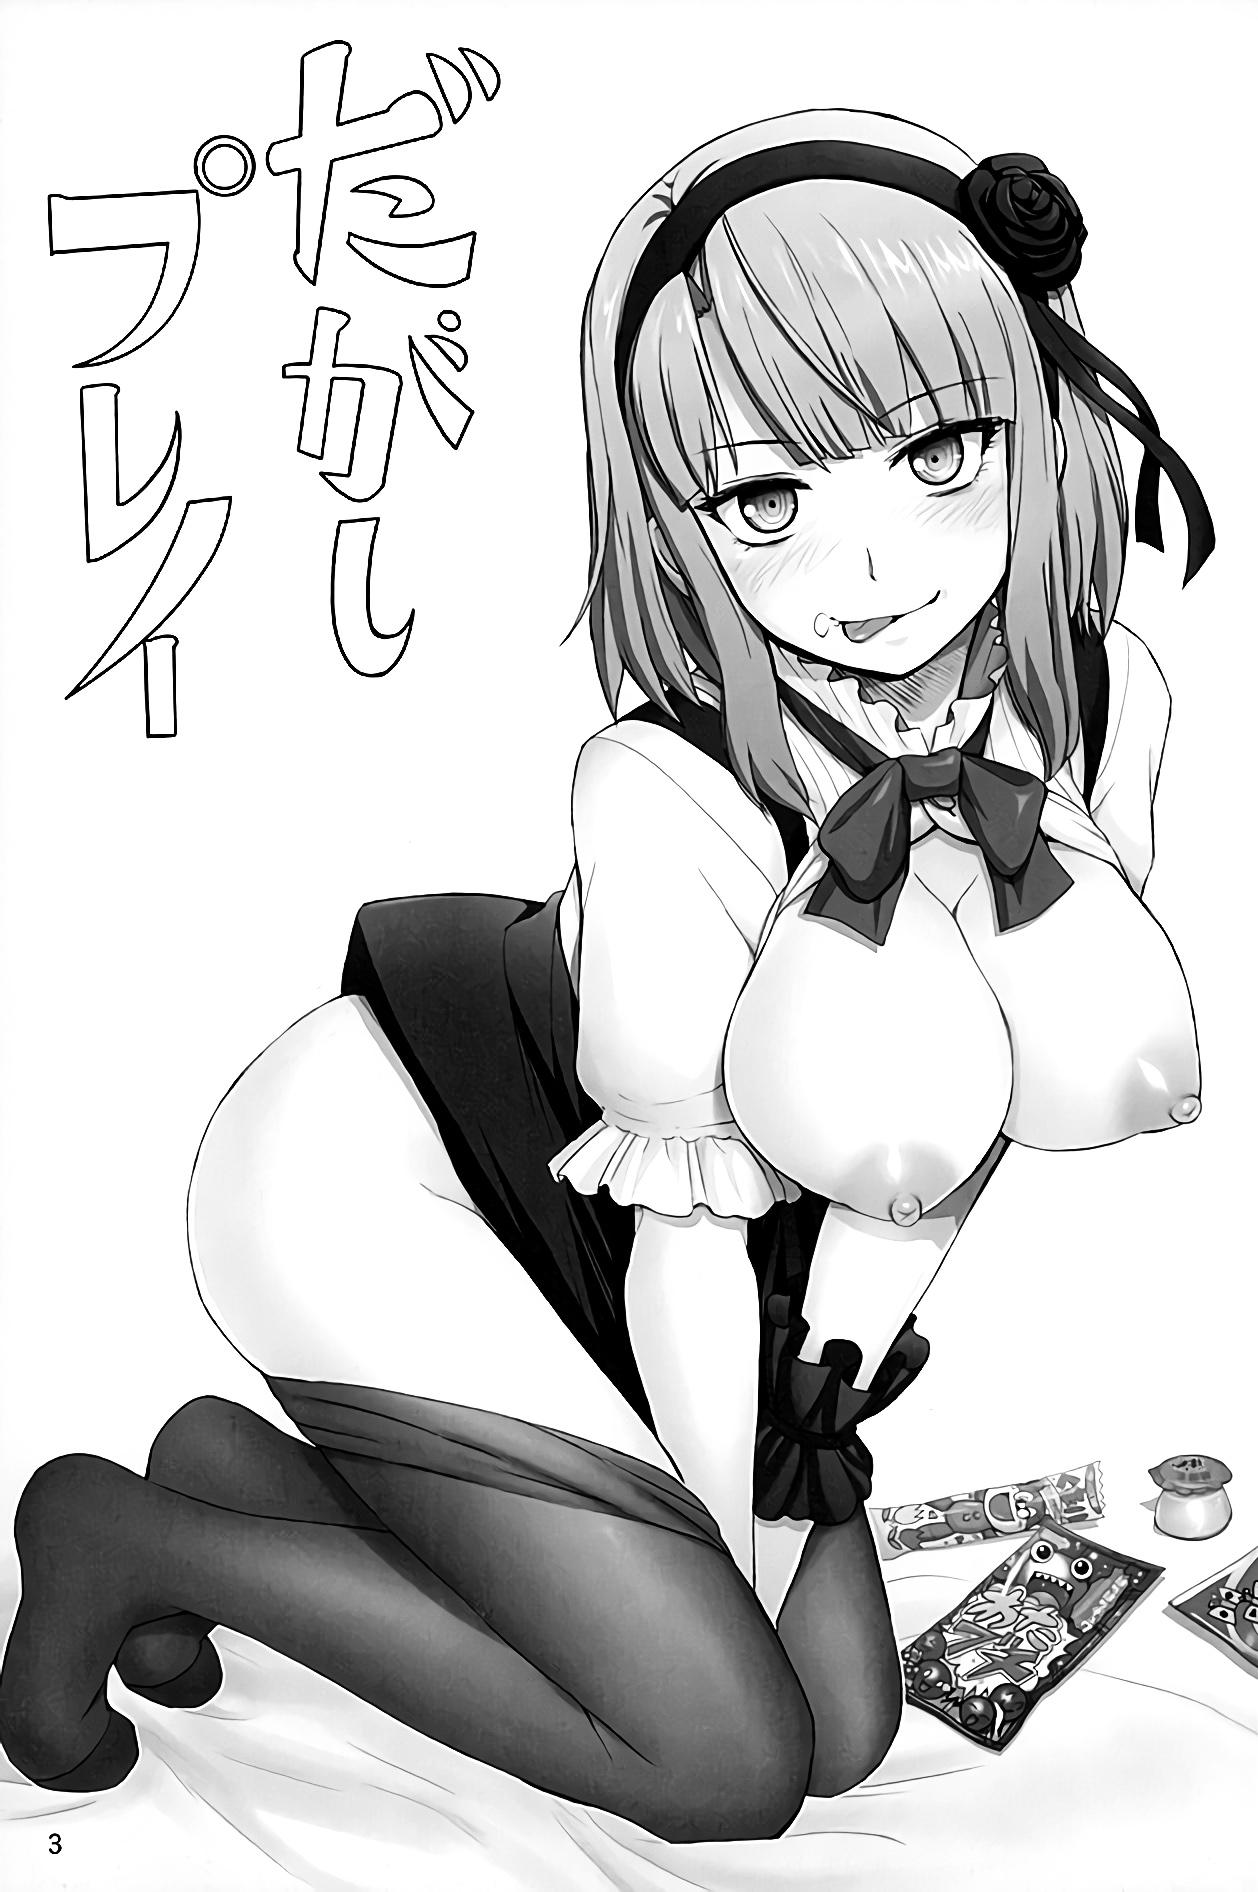 Chudai Dagashi Play - Dagashi kashi Masturbating - Page 3